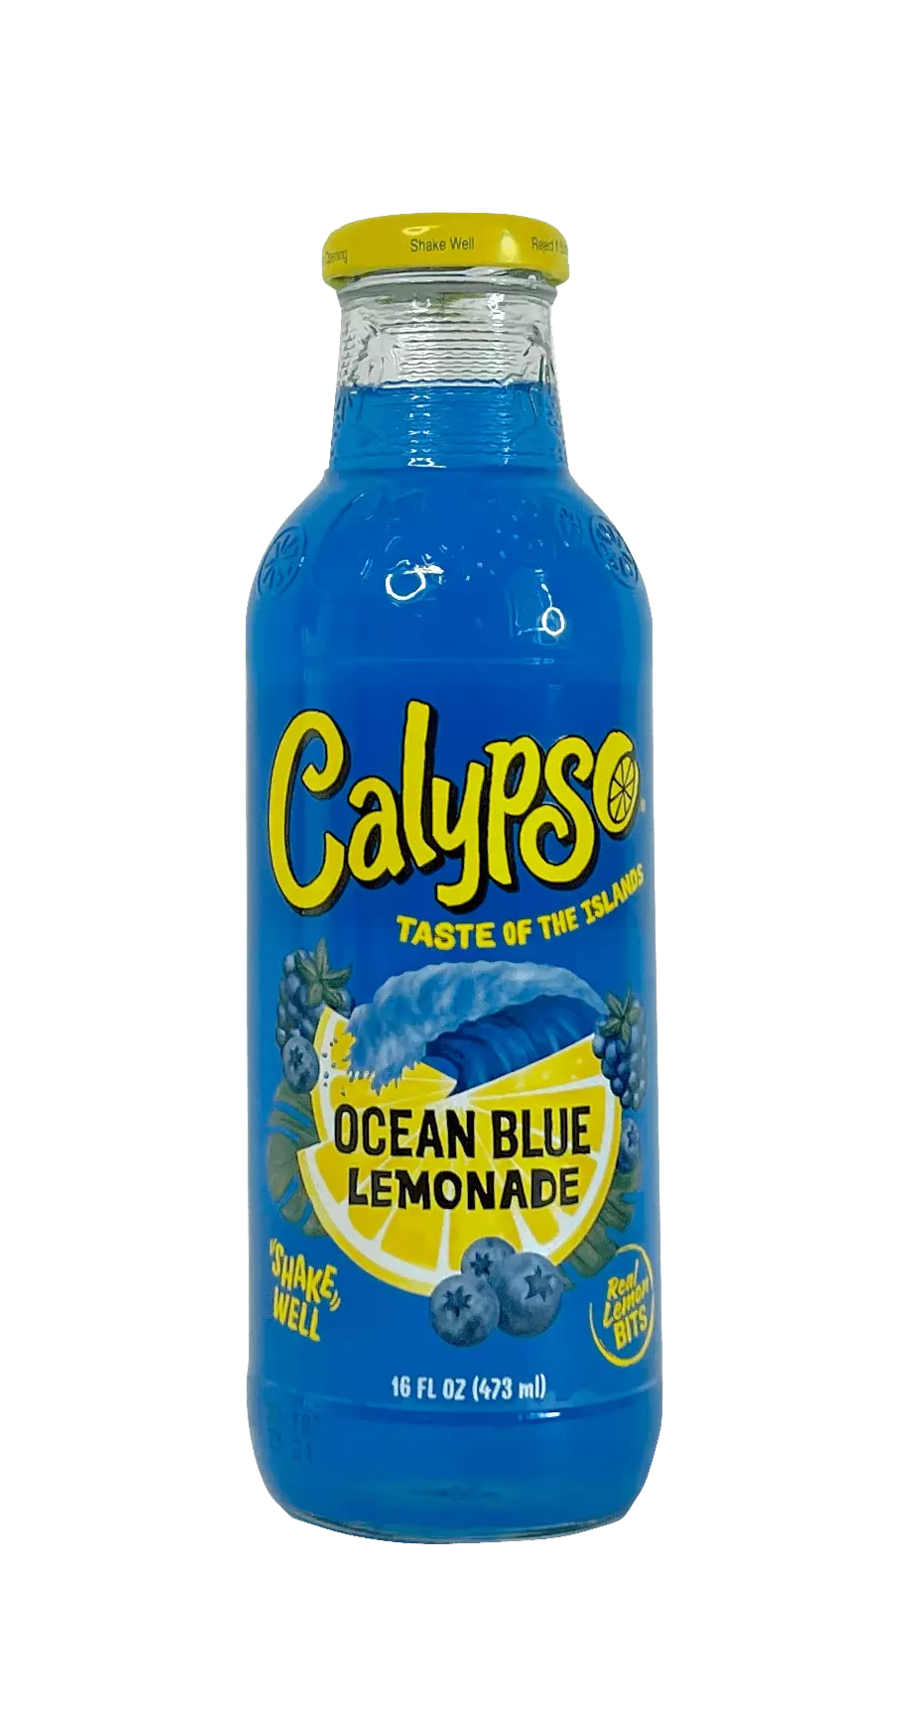 海洋蓝 蓝莓风味 饮料 473ml Calypso 美国